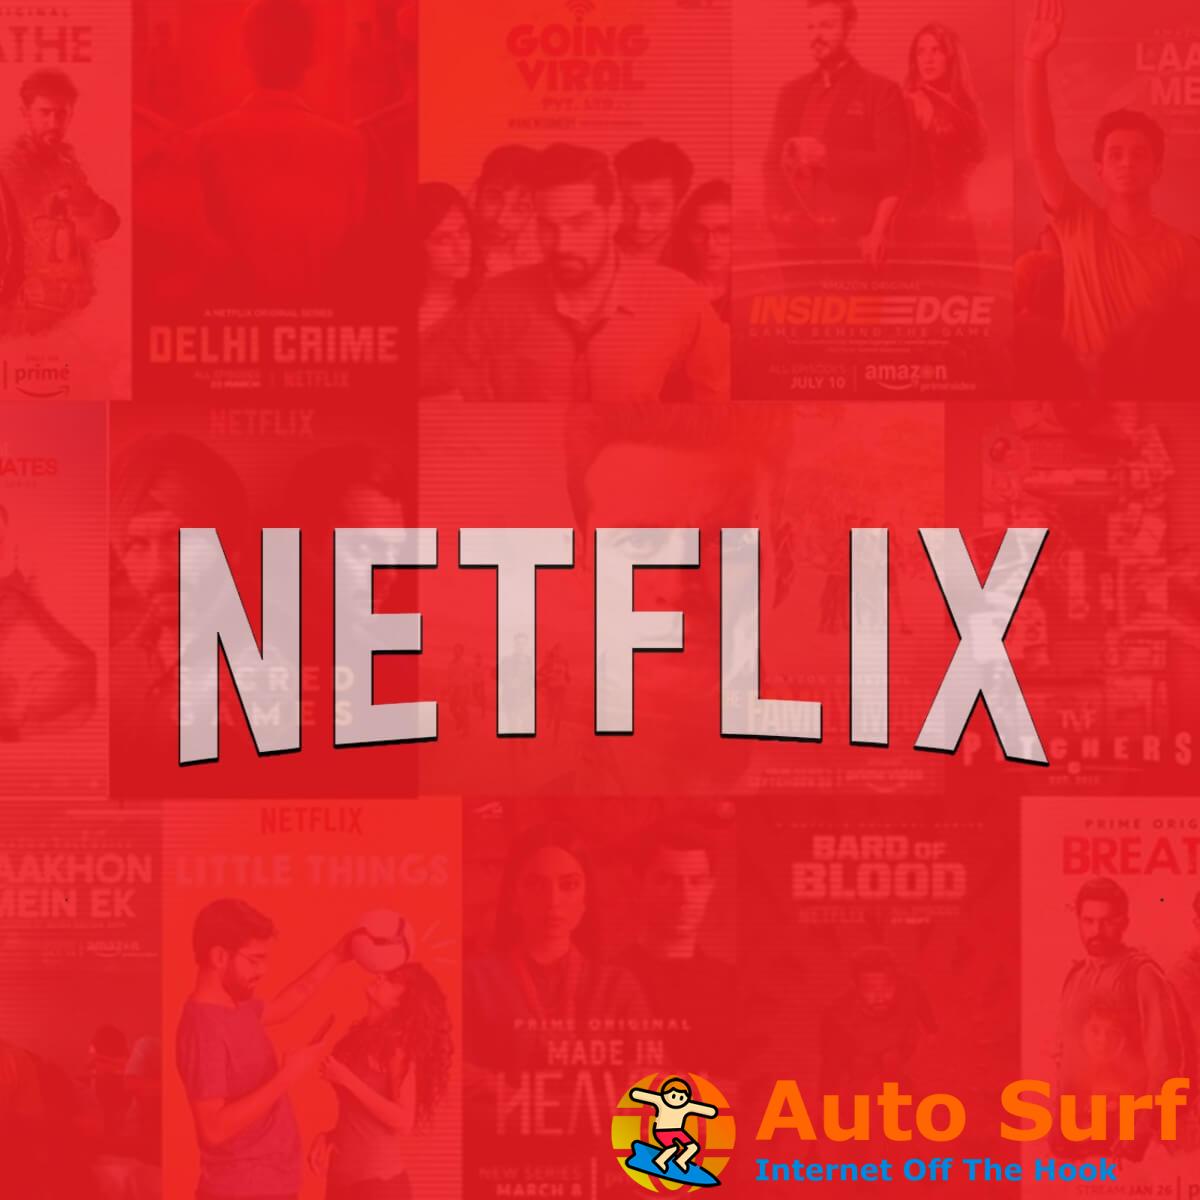 REVISIÓN: error de descarga de Netflix [Full Guide]